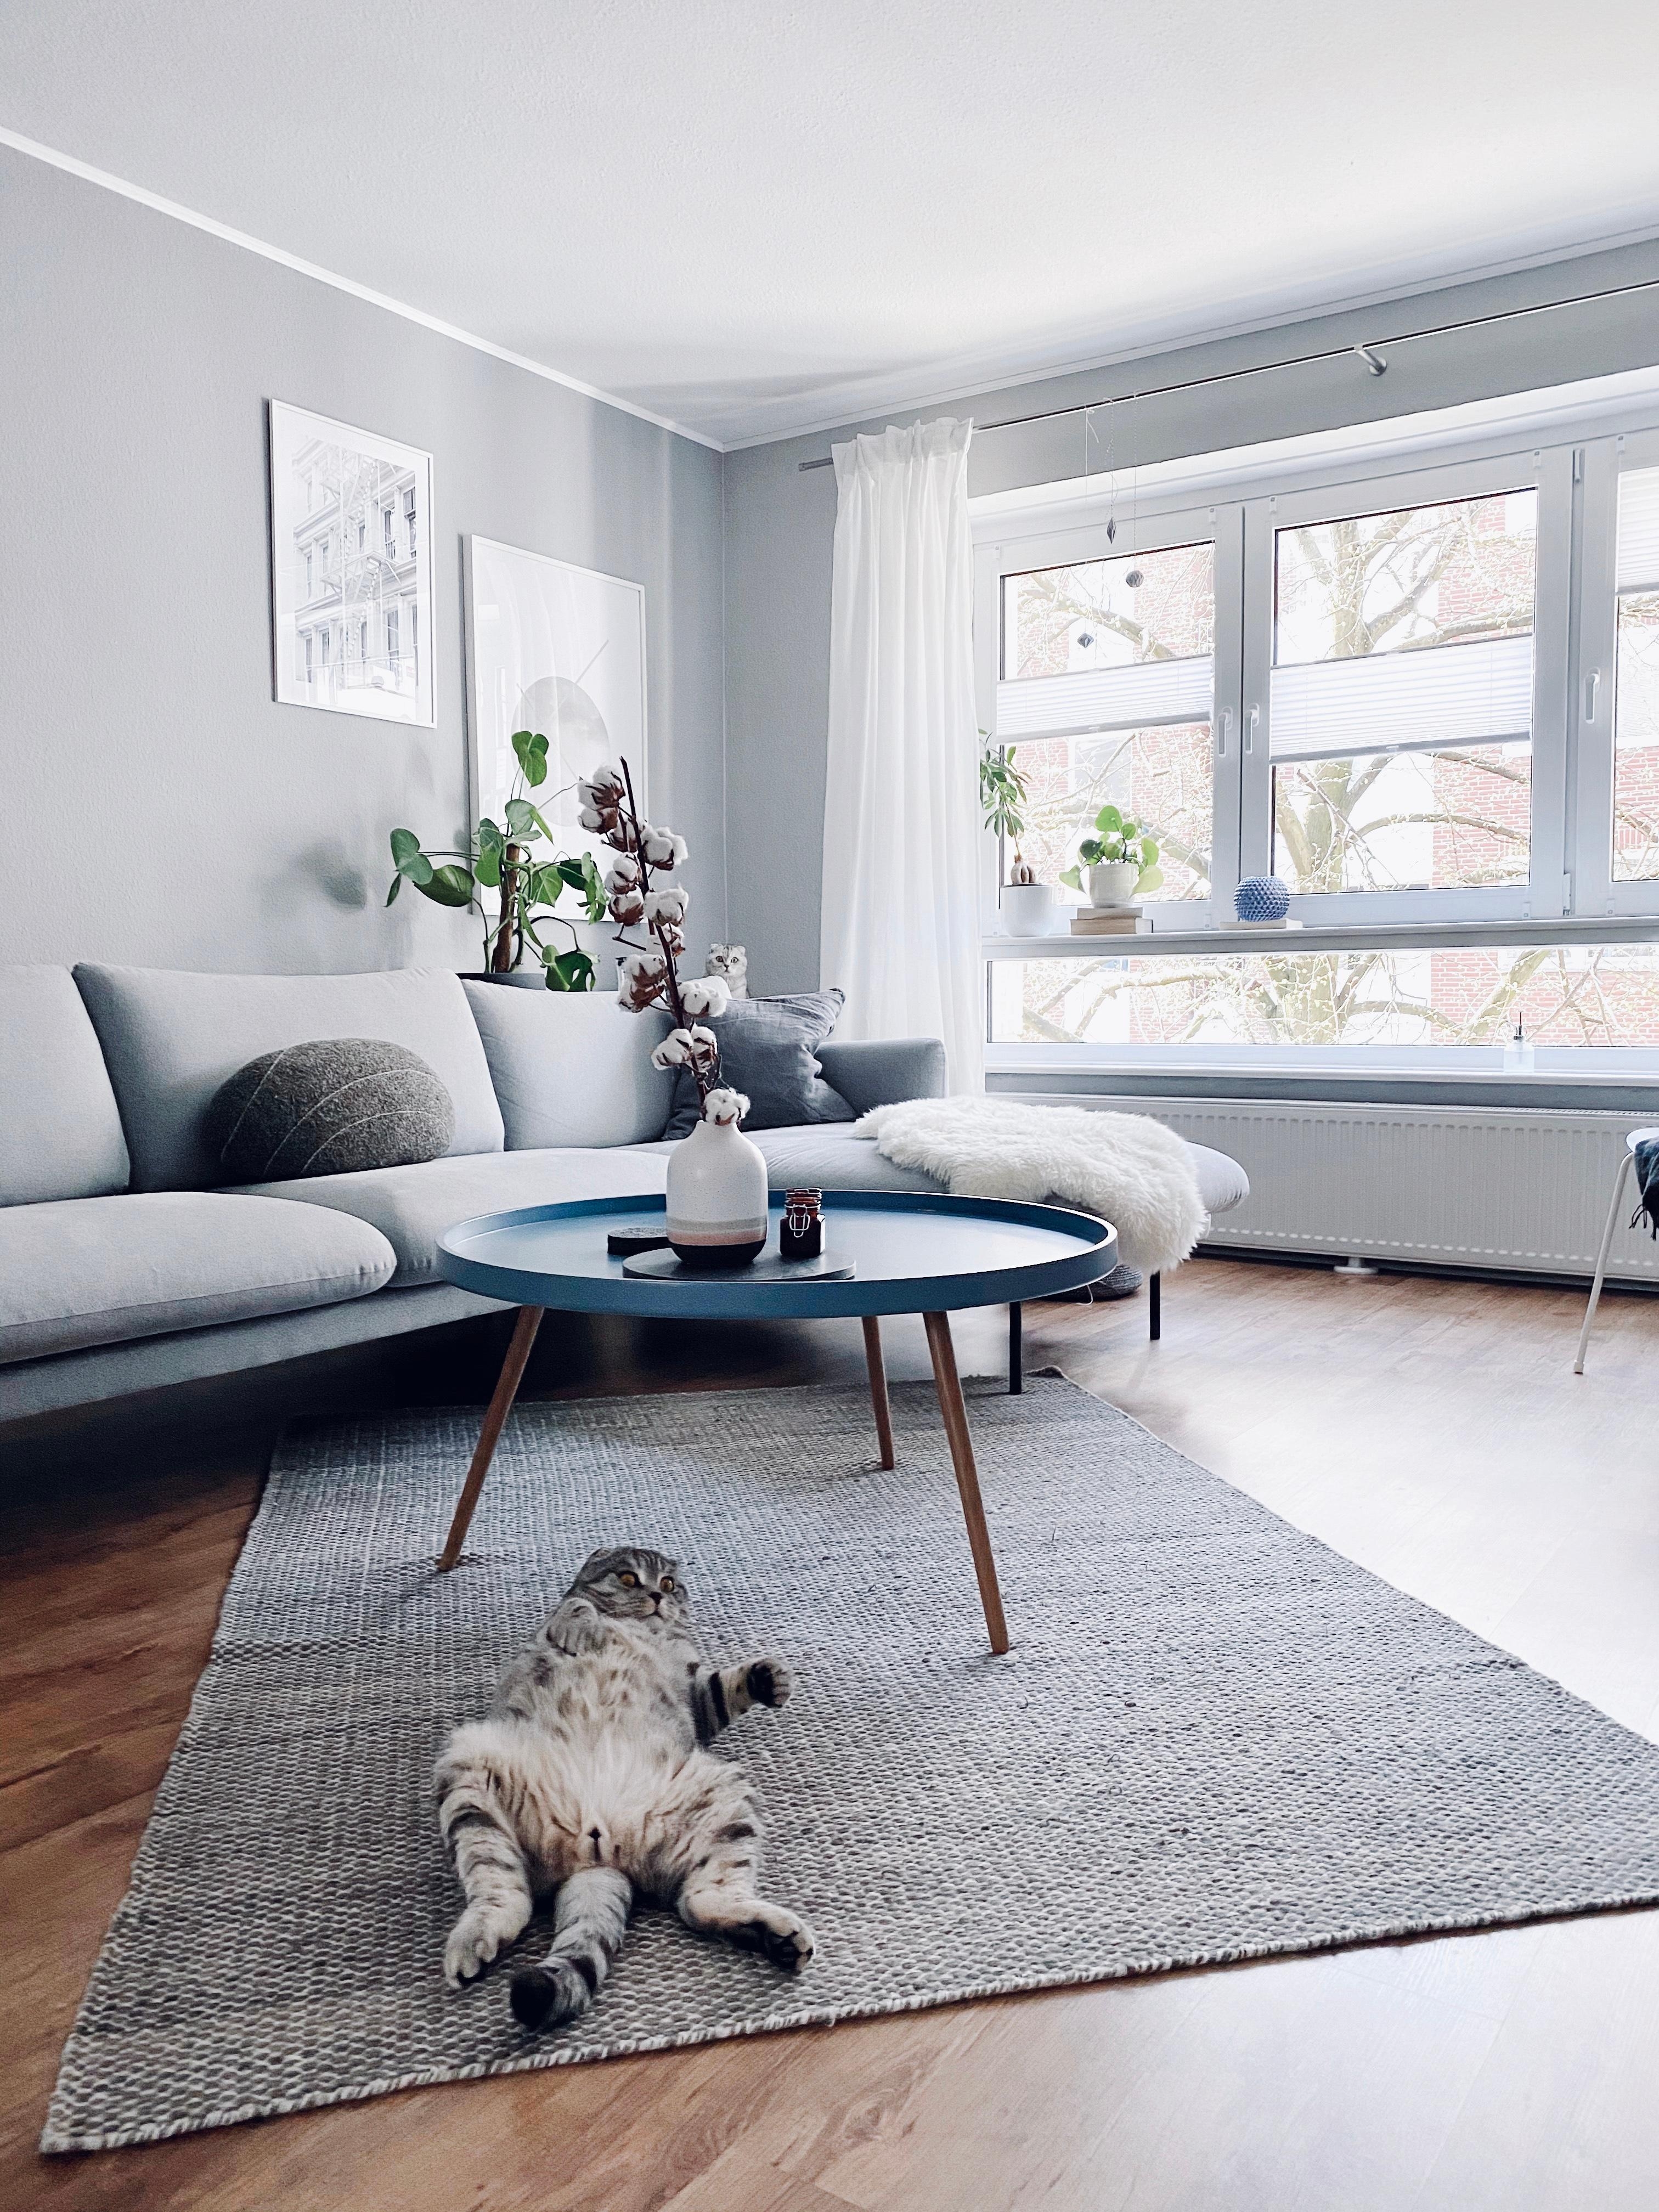 Schöne Feiertage! 
#interior #livingroom #catlover #greylover #monochrome #minimalism